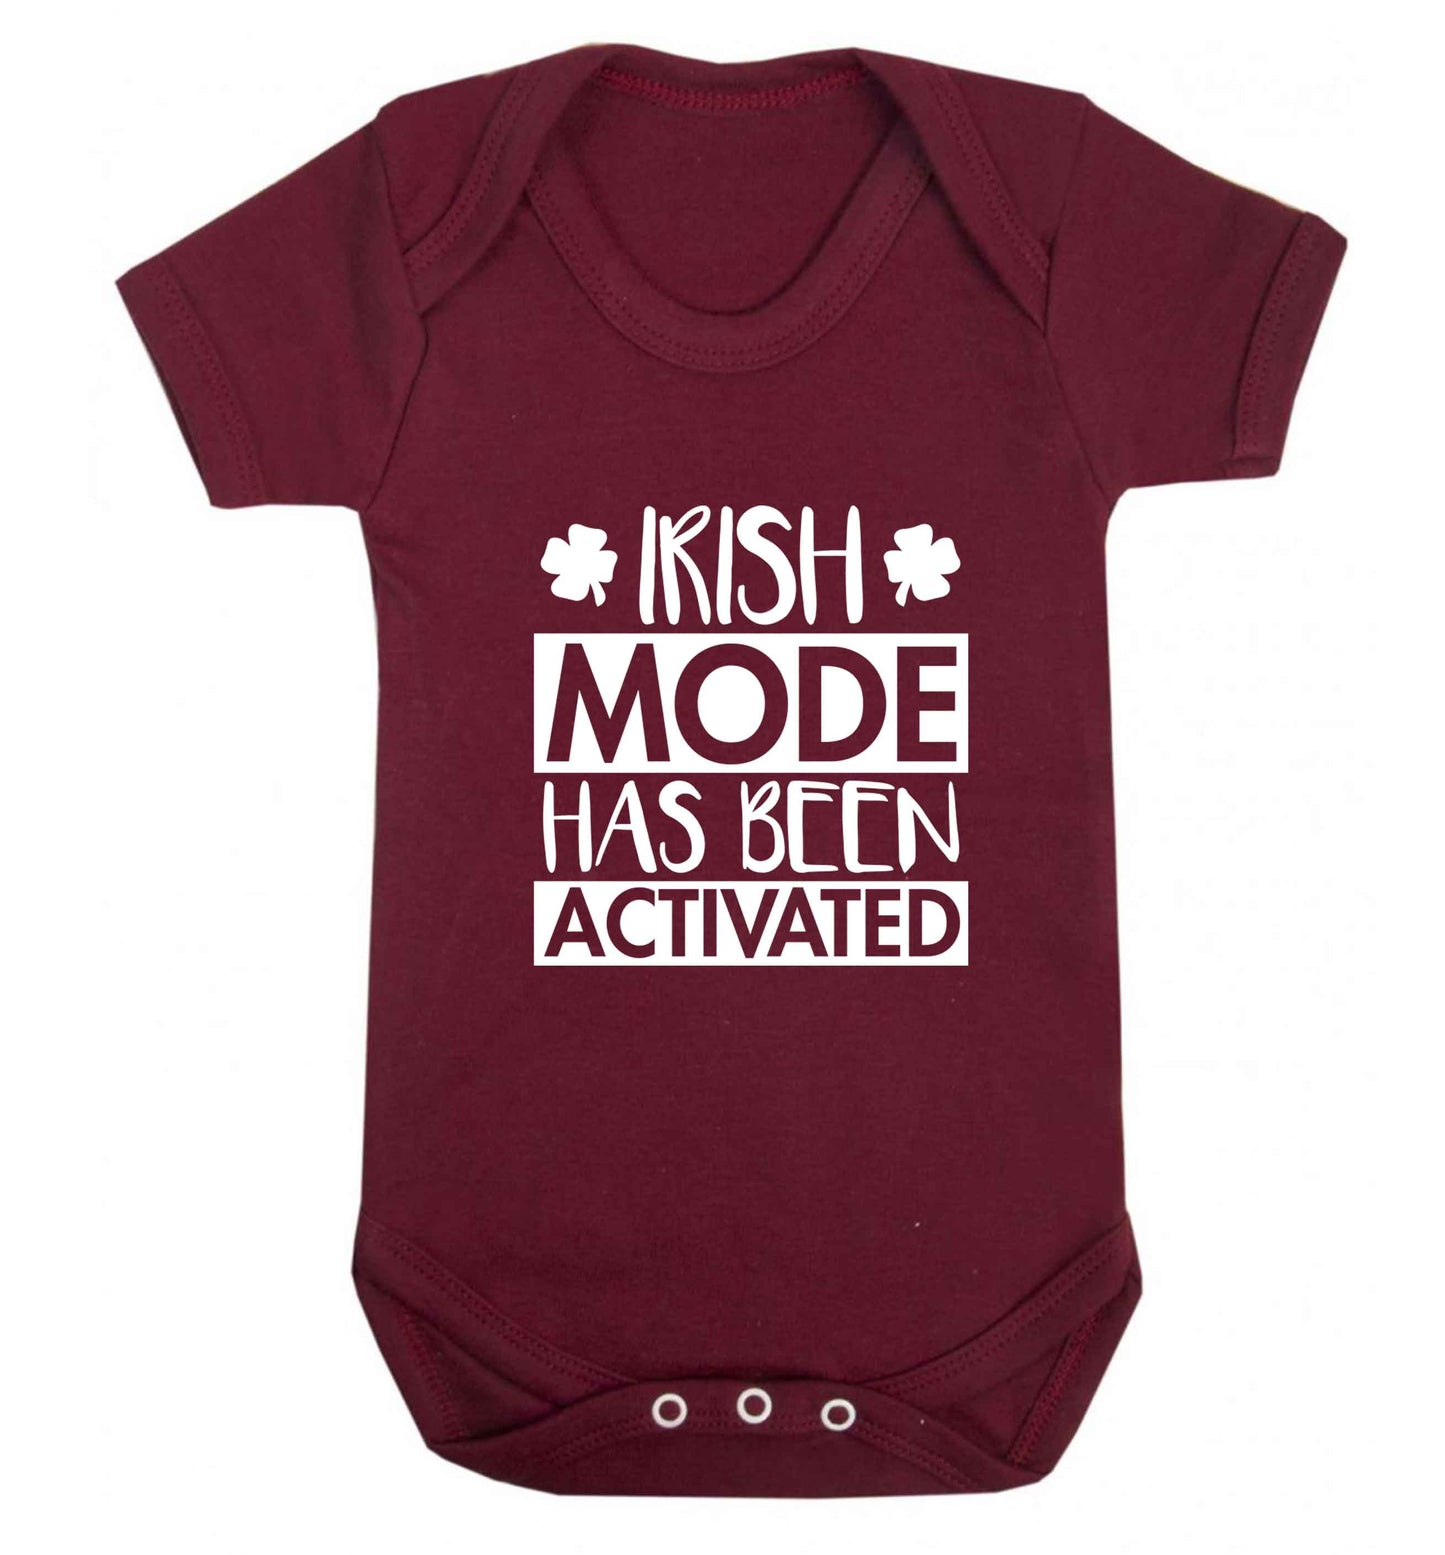 Irish mode has been activated baby vest maroon 18-24 months